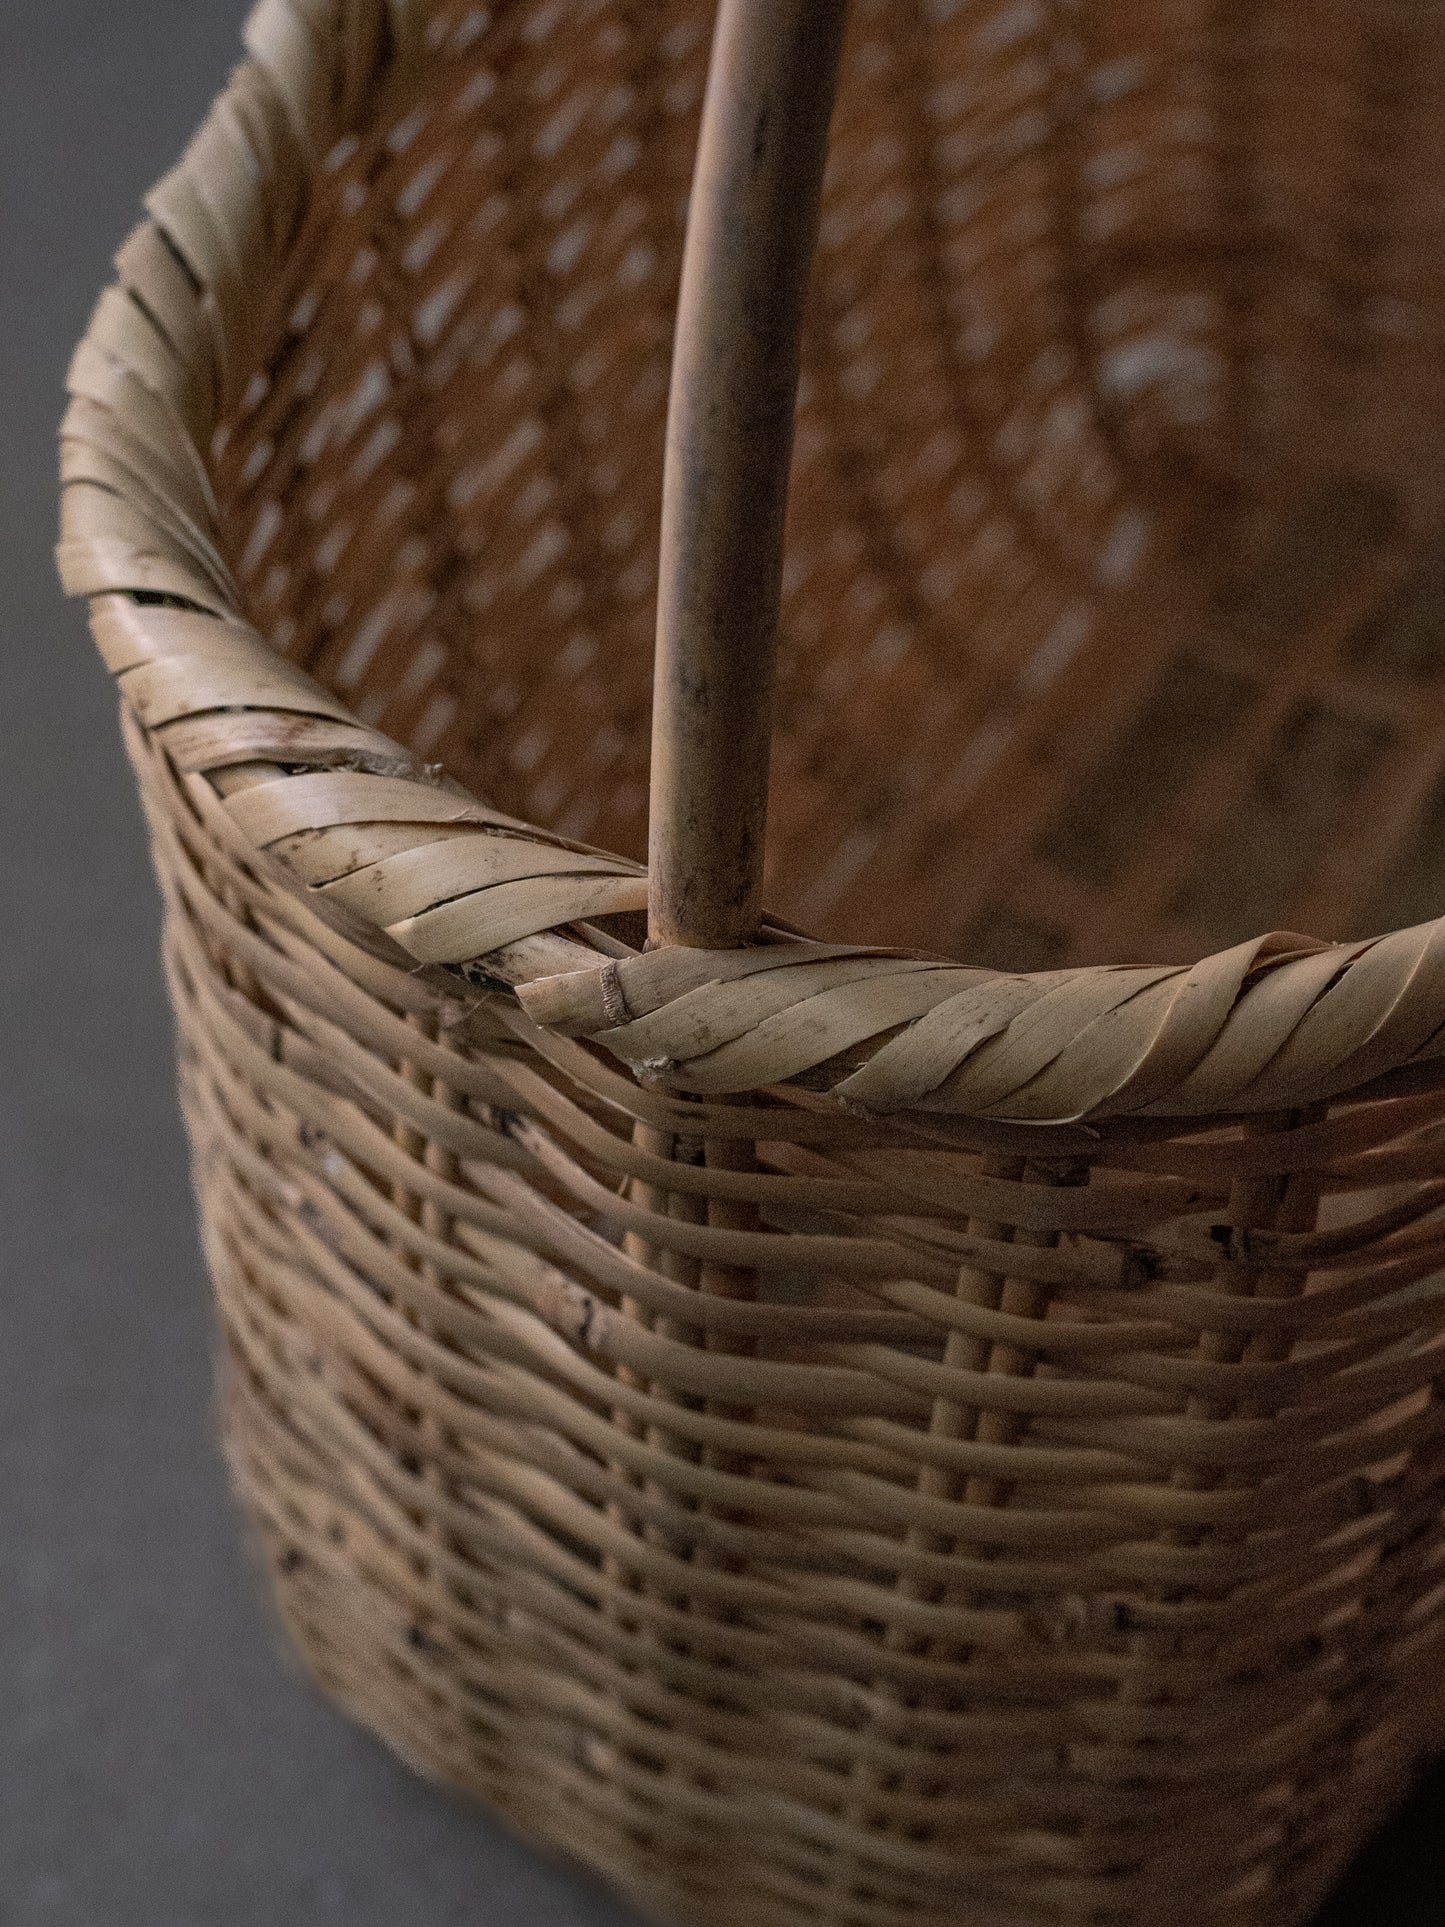 Japanese Farm Basket